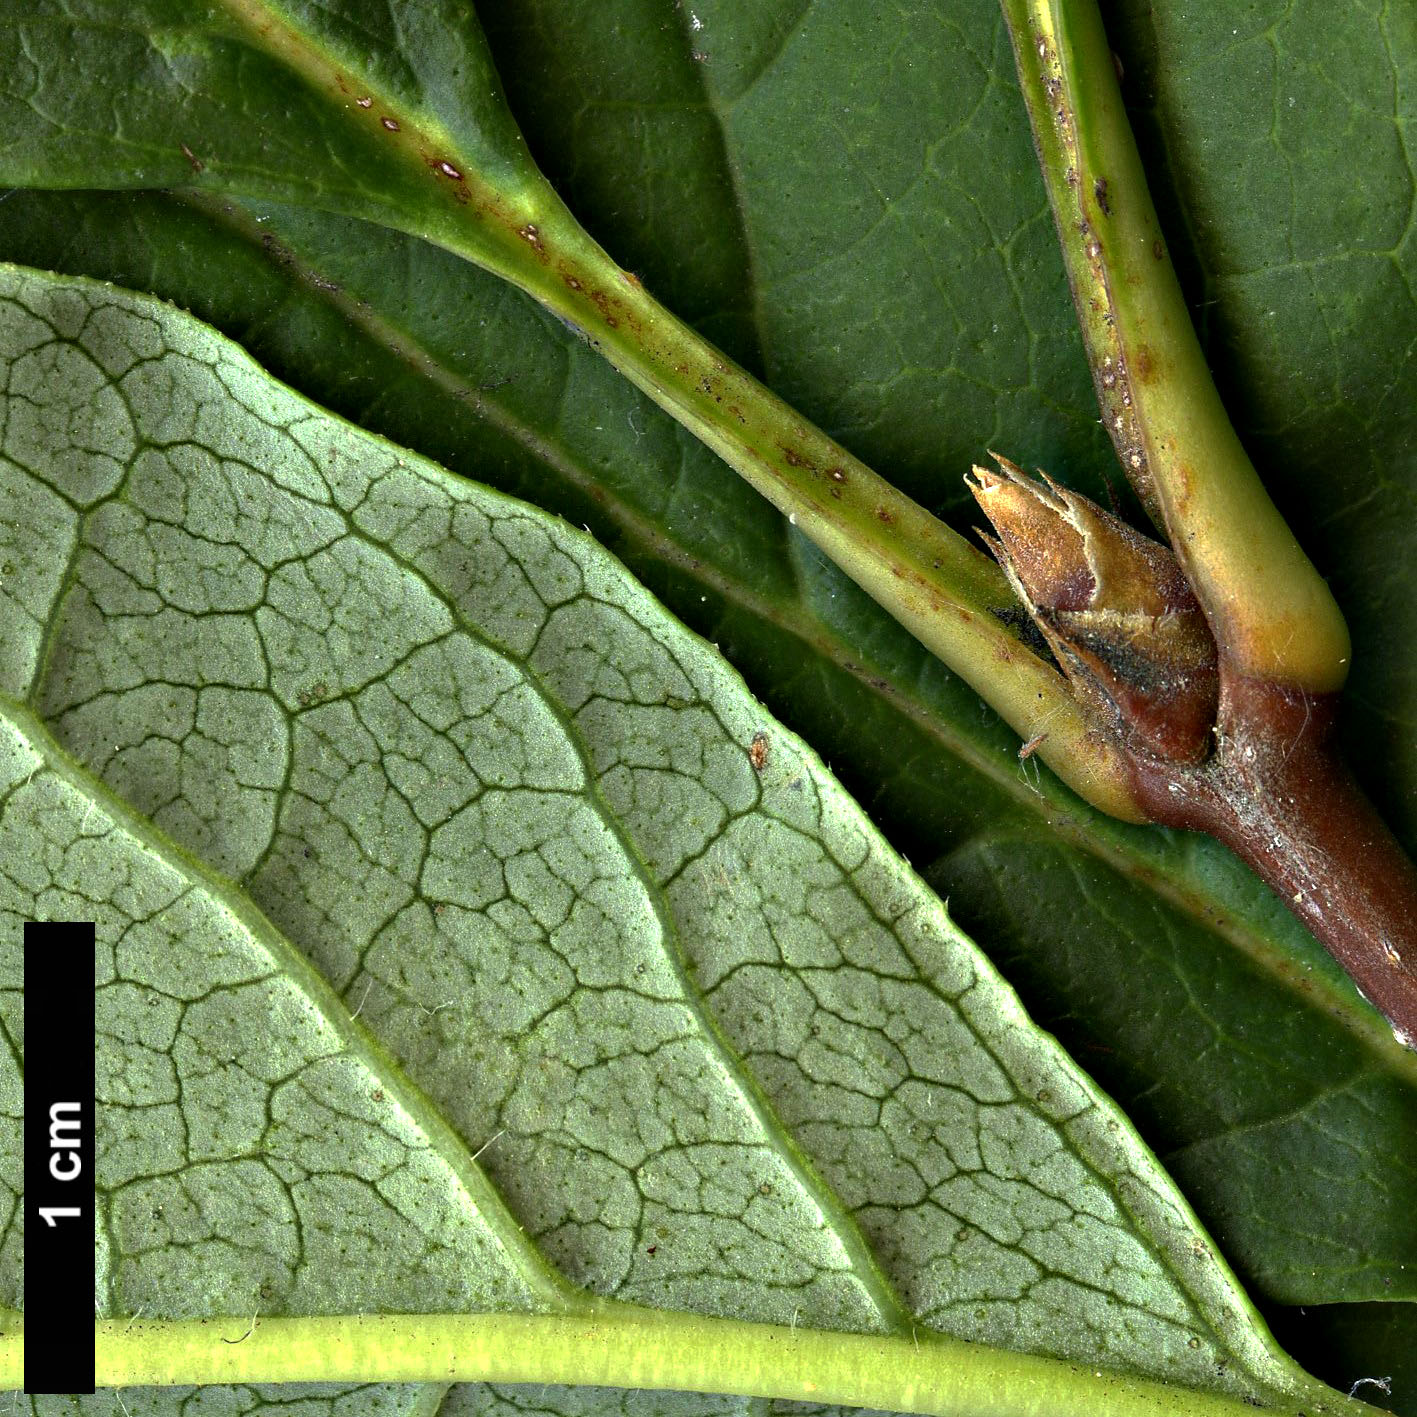 High resolution image: Family: Oleaceae - Genus: Syringa - Taxon: villosa